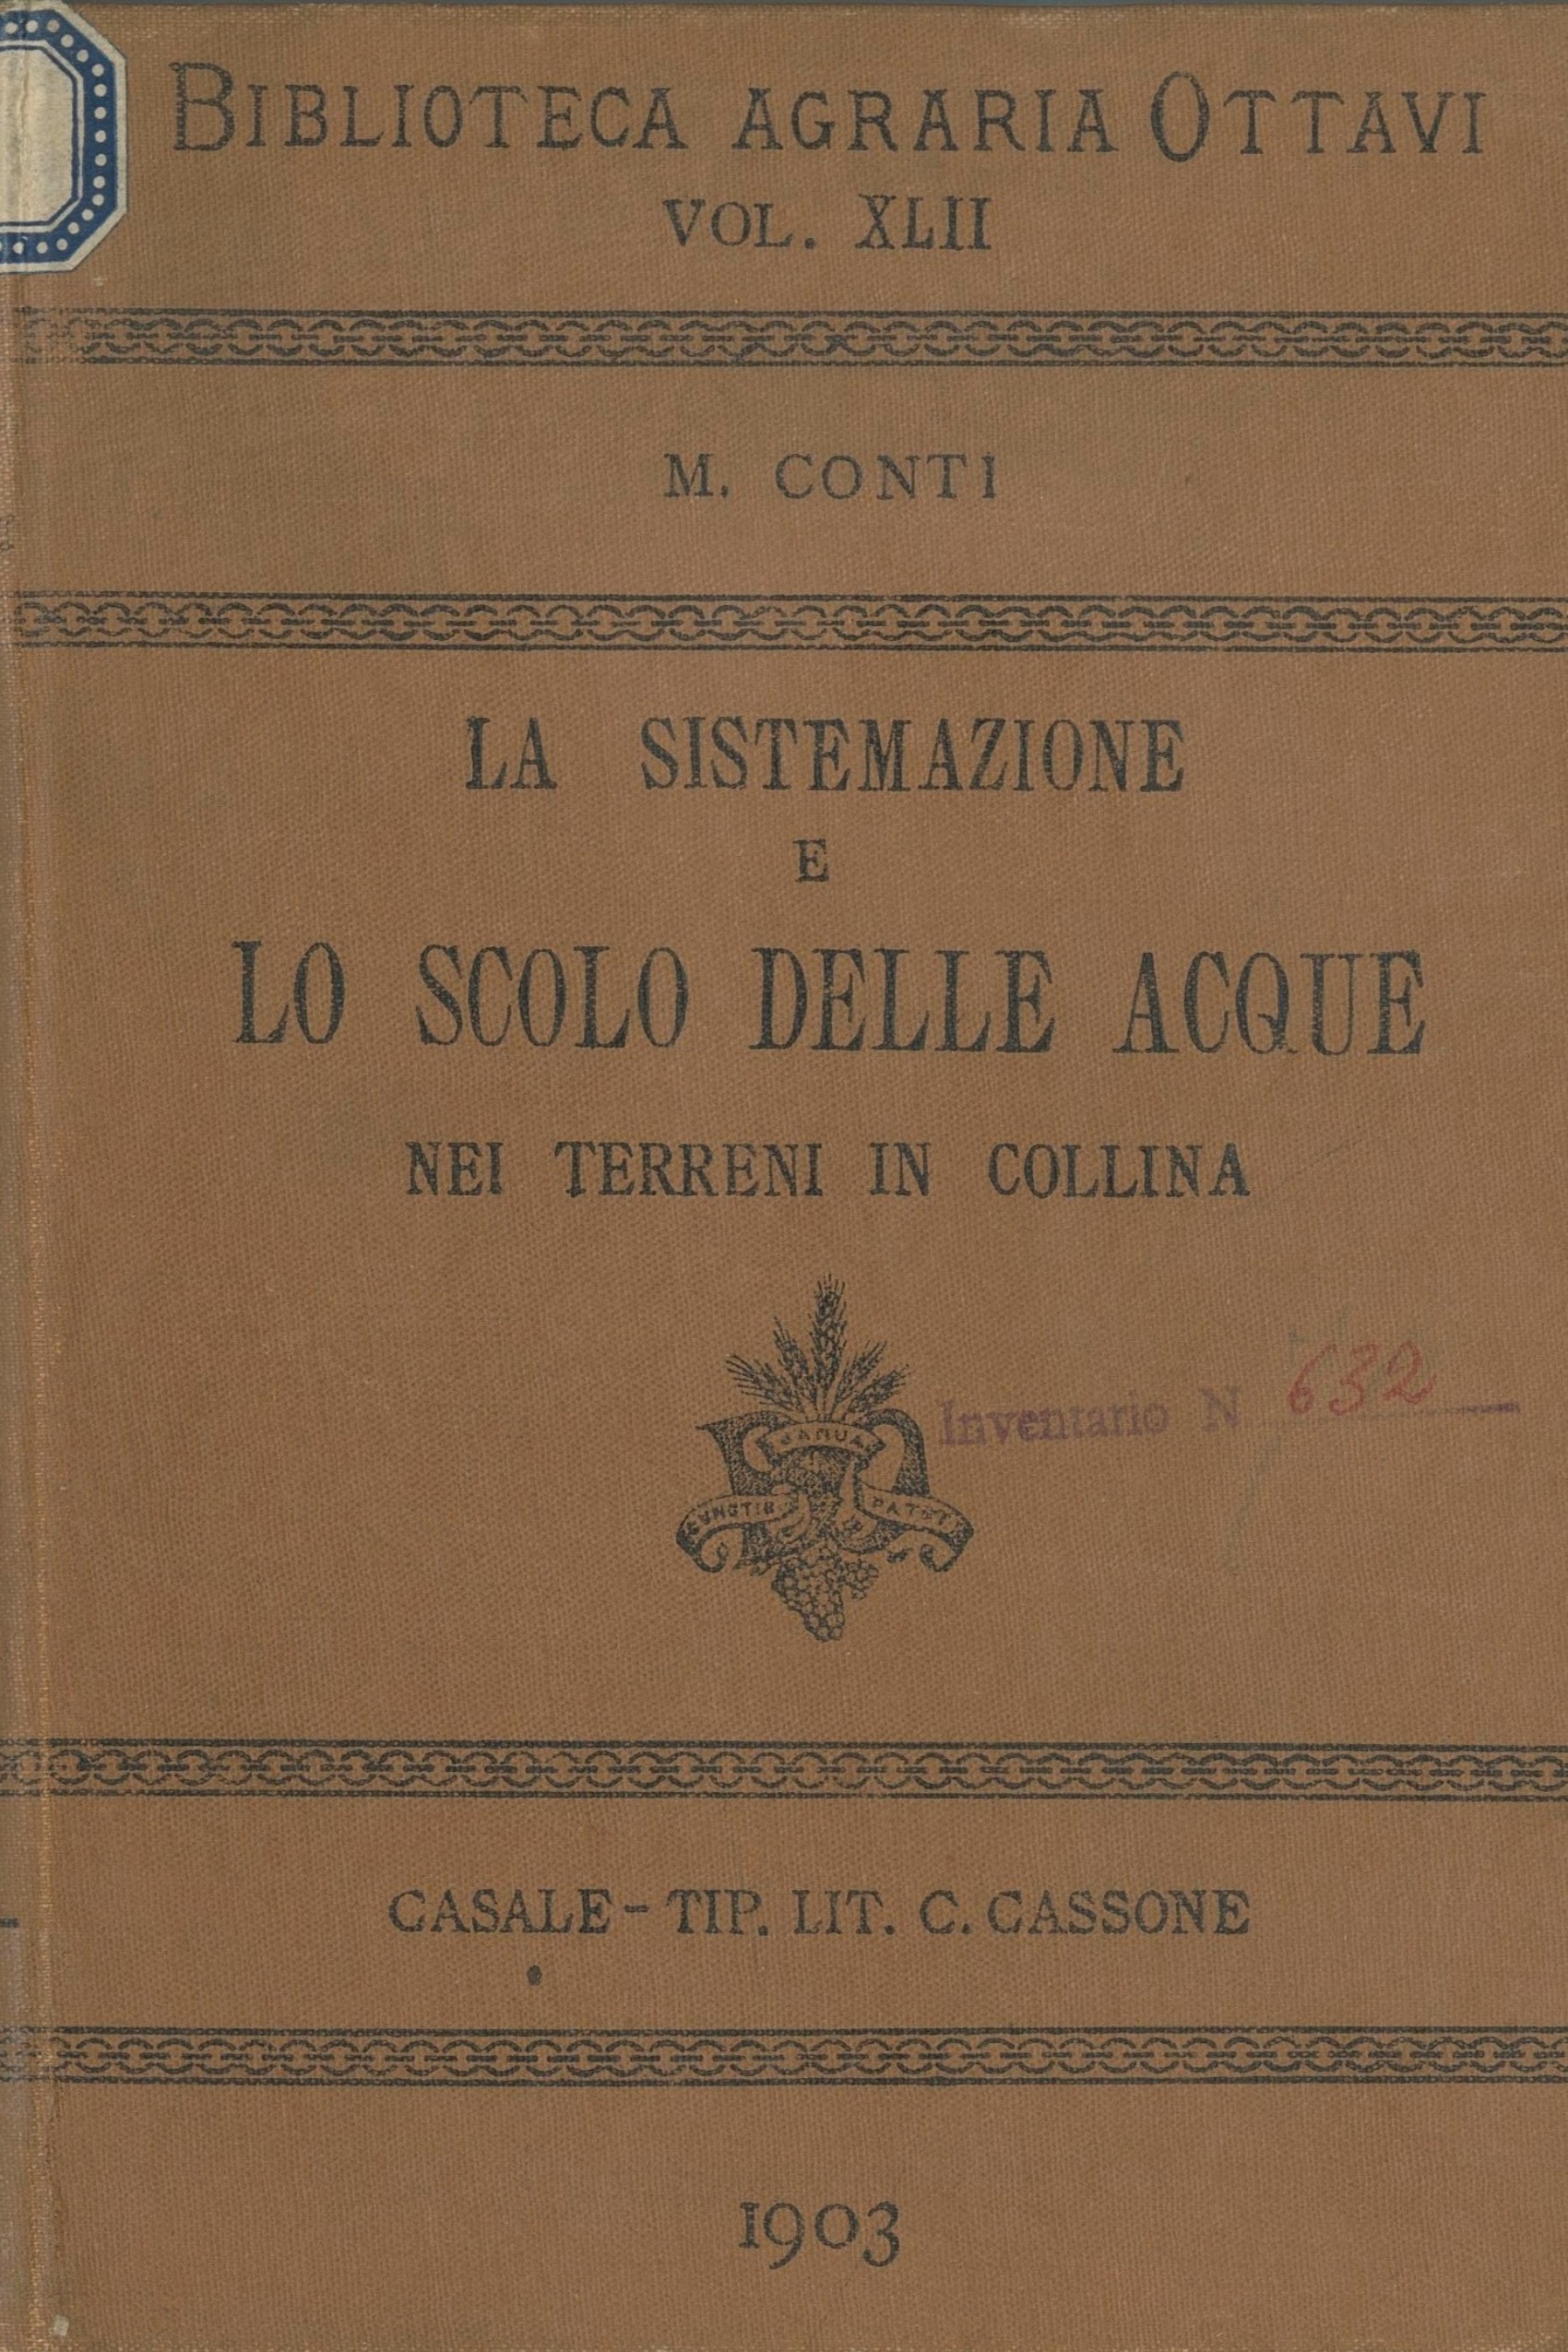 Conti 1903